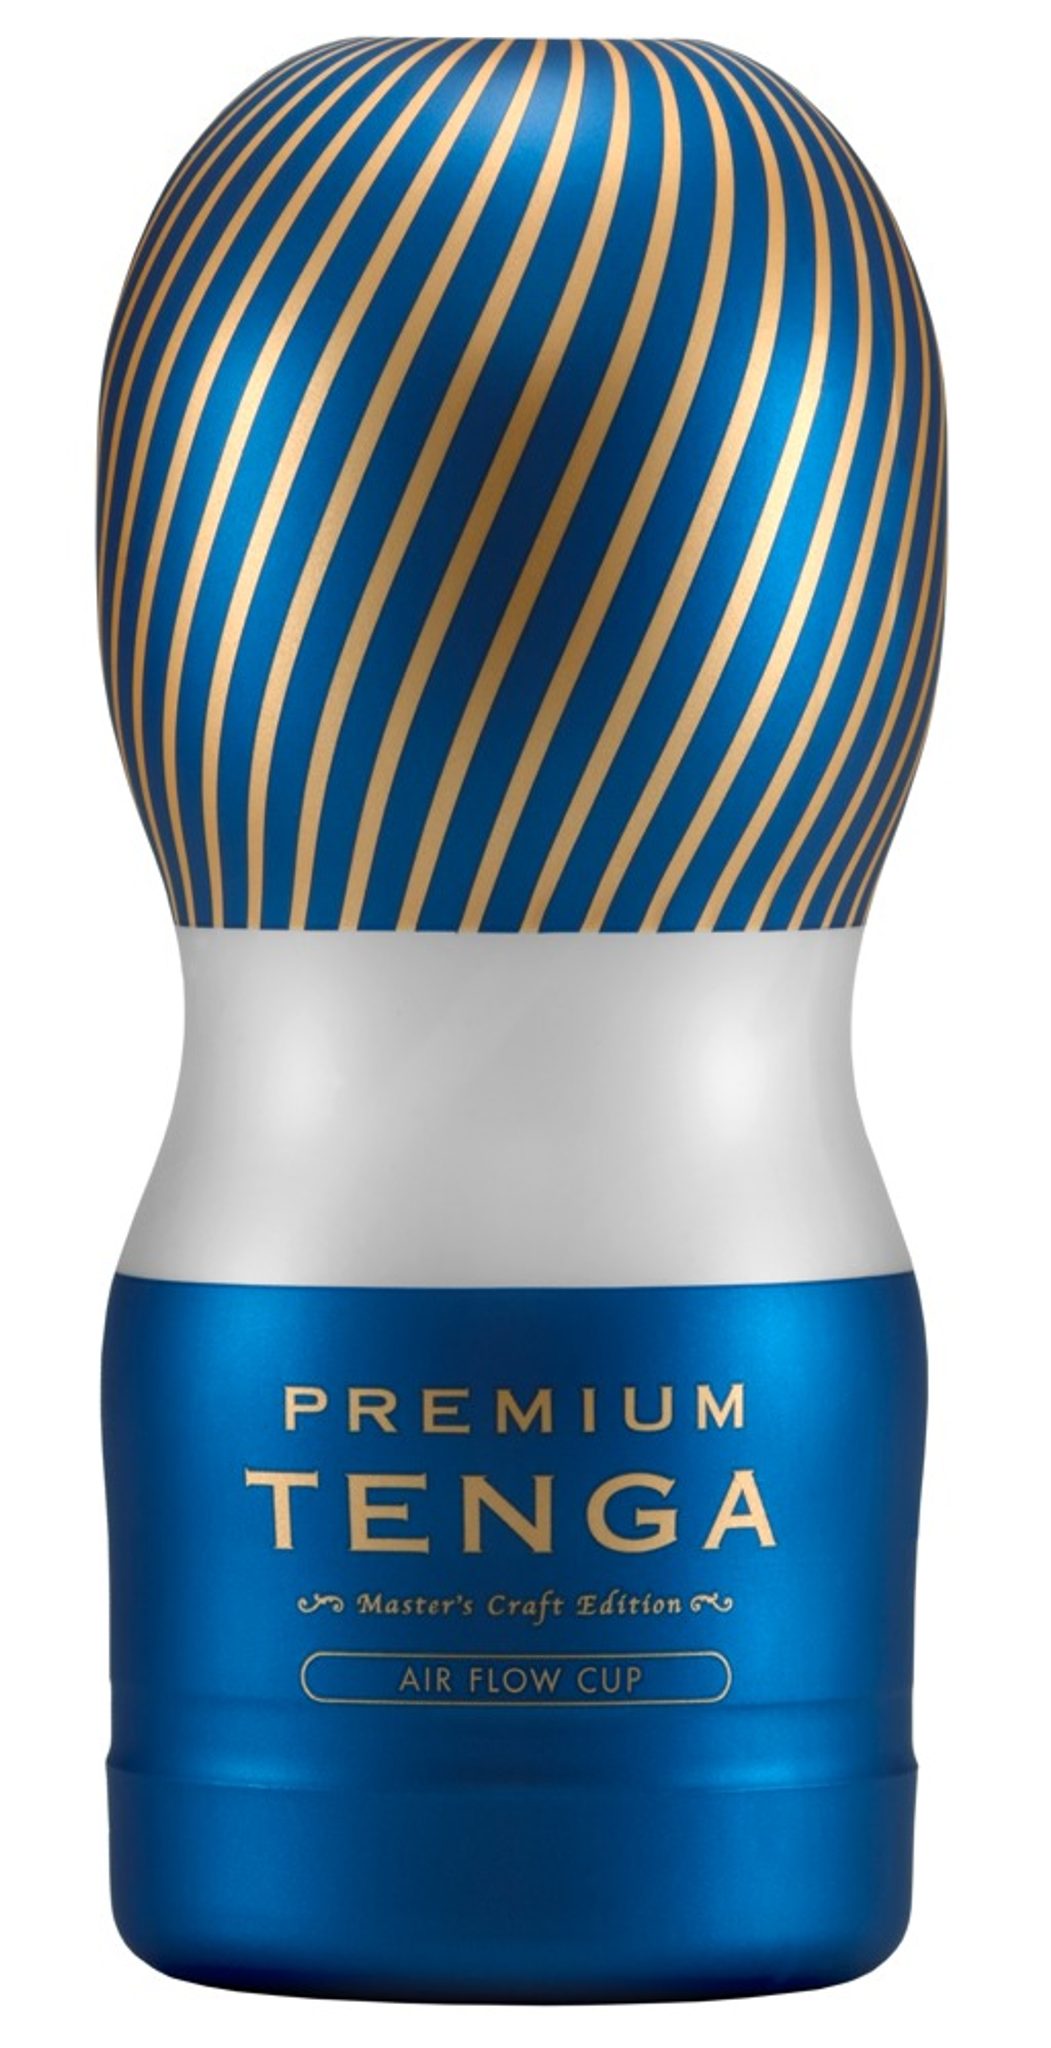 TENGA AIR FLOW Cup